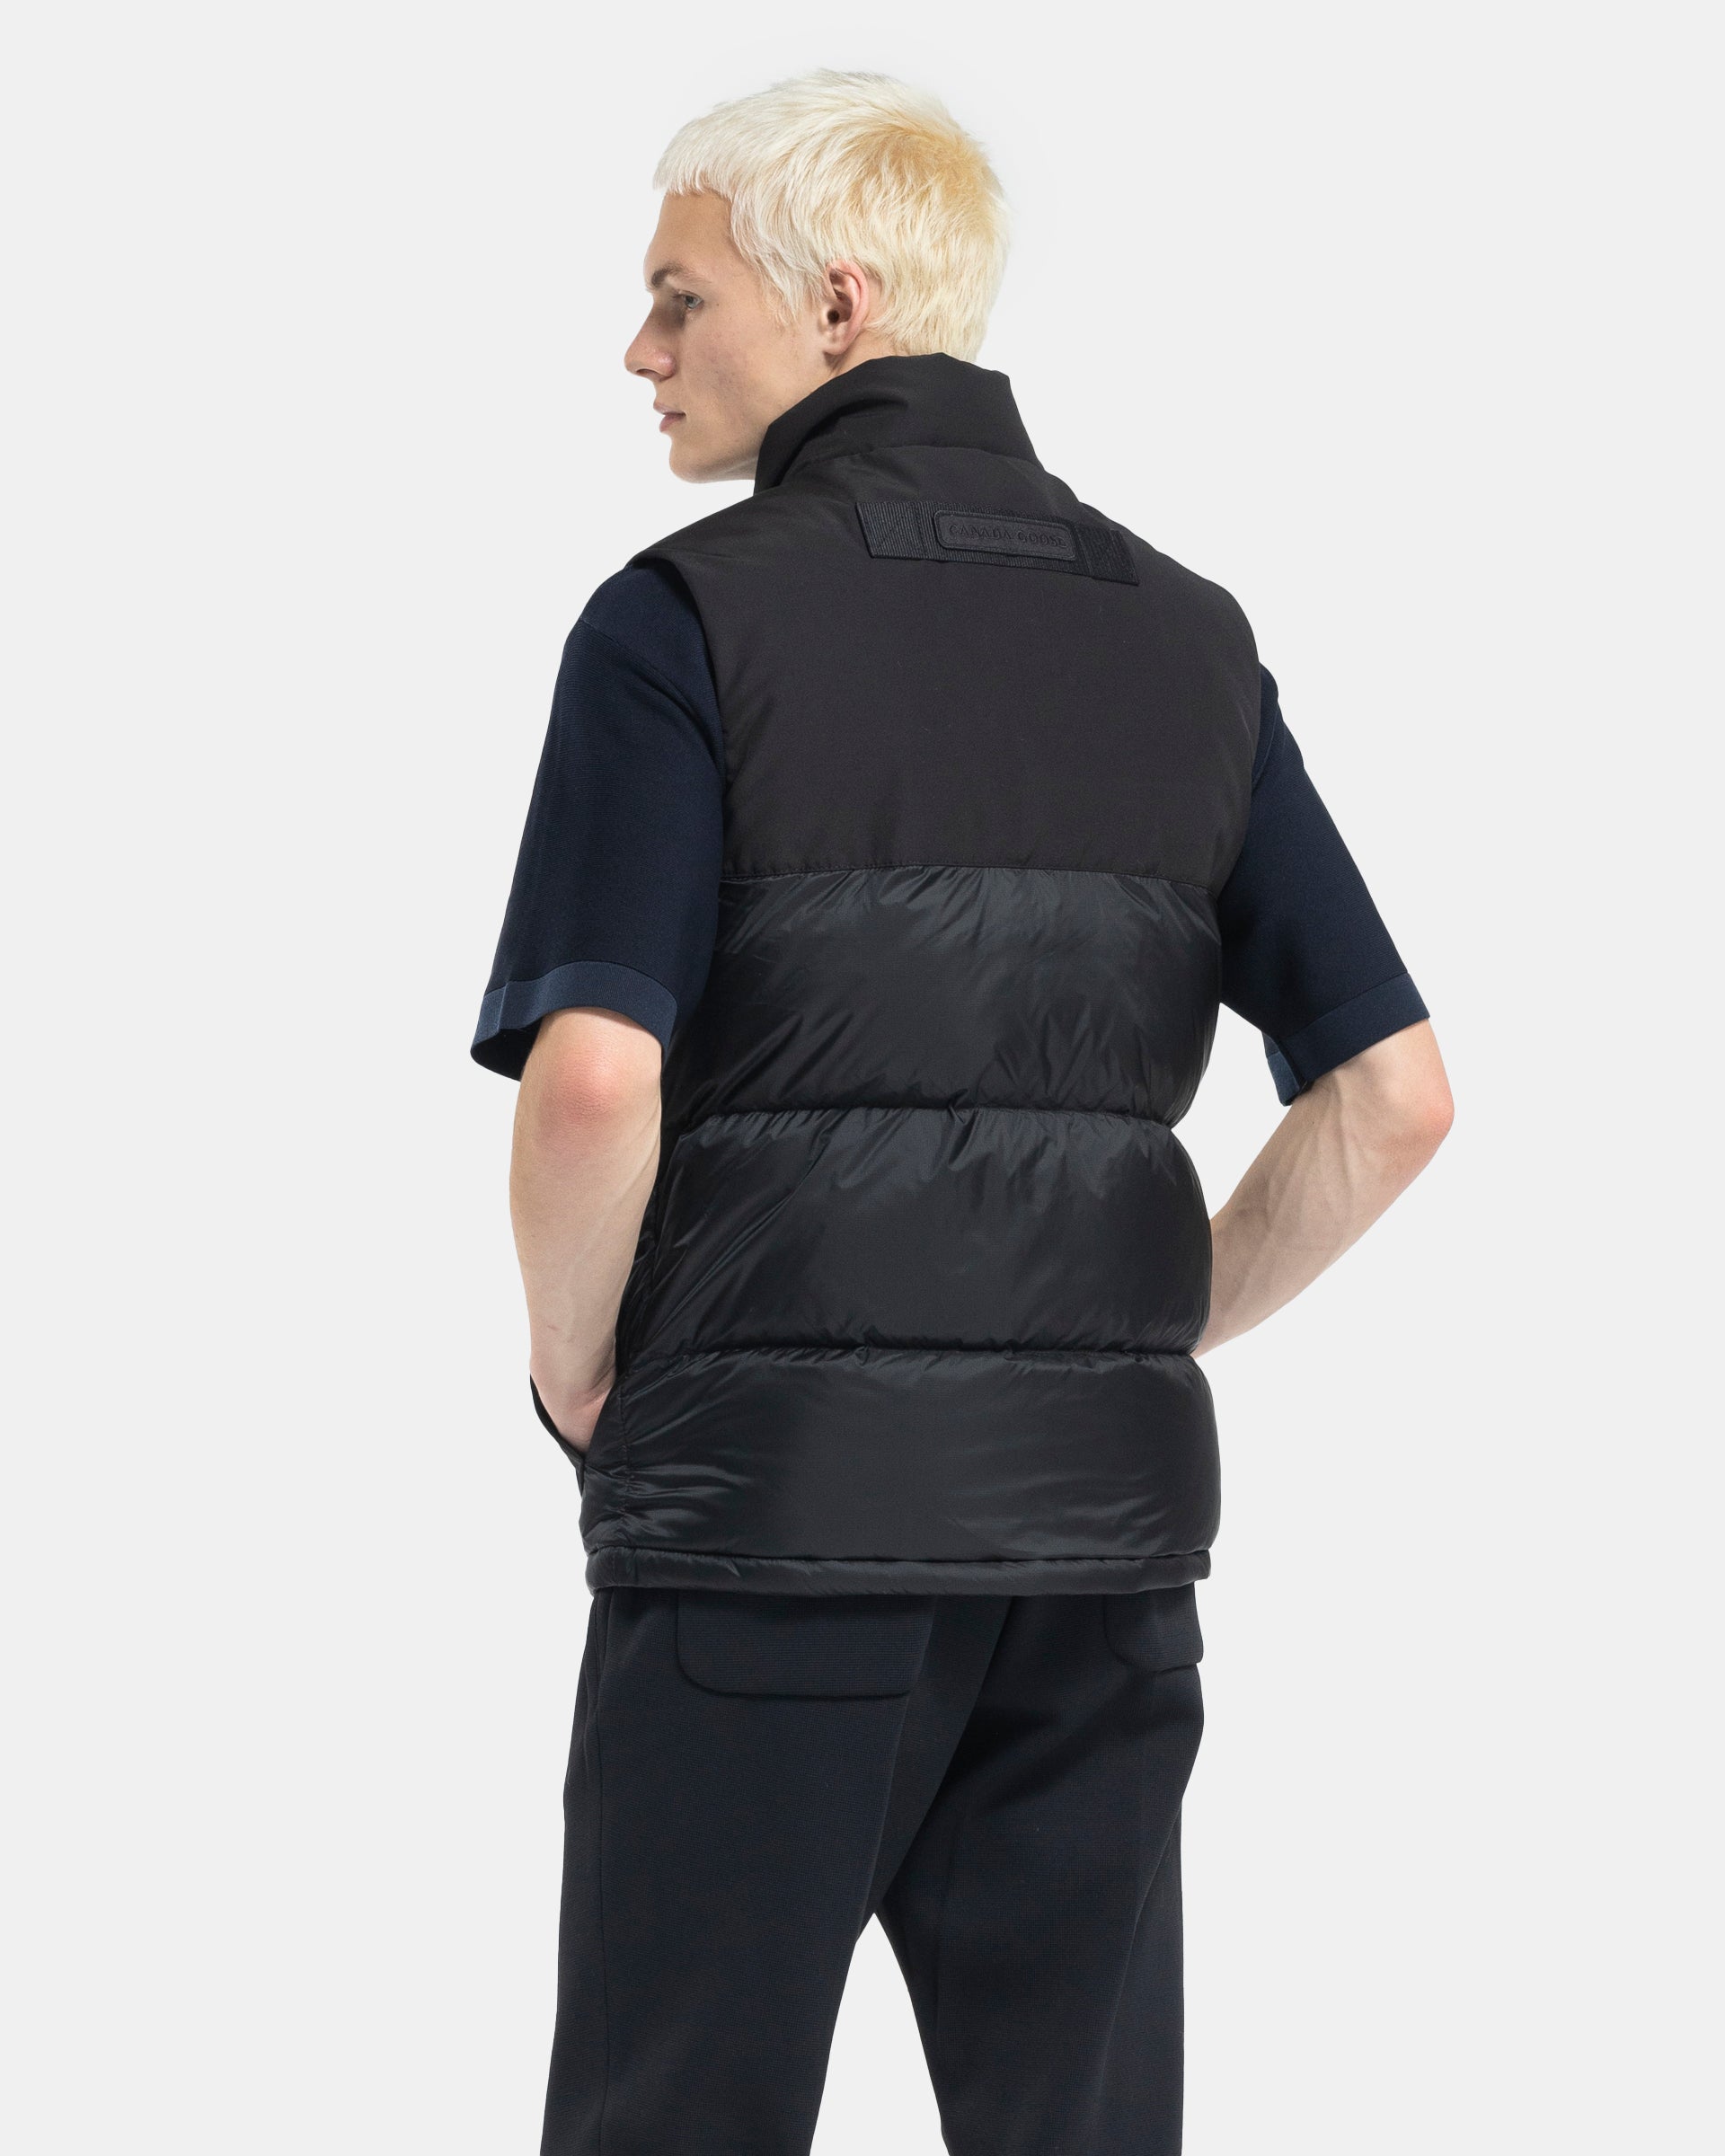 Paradigm Freestyle Vest in Black Disc